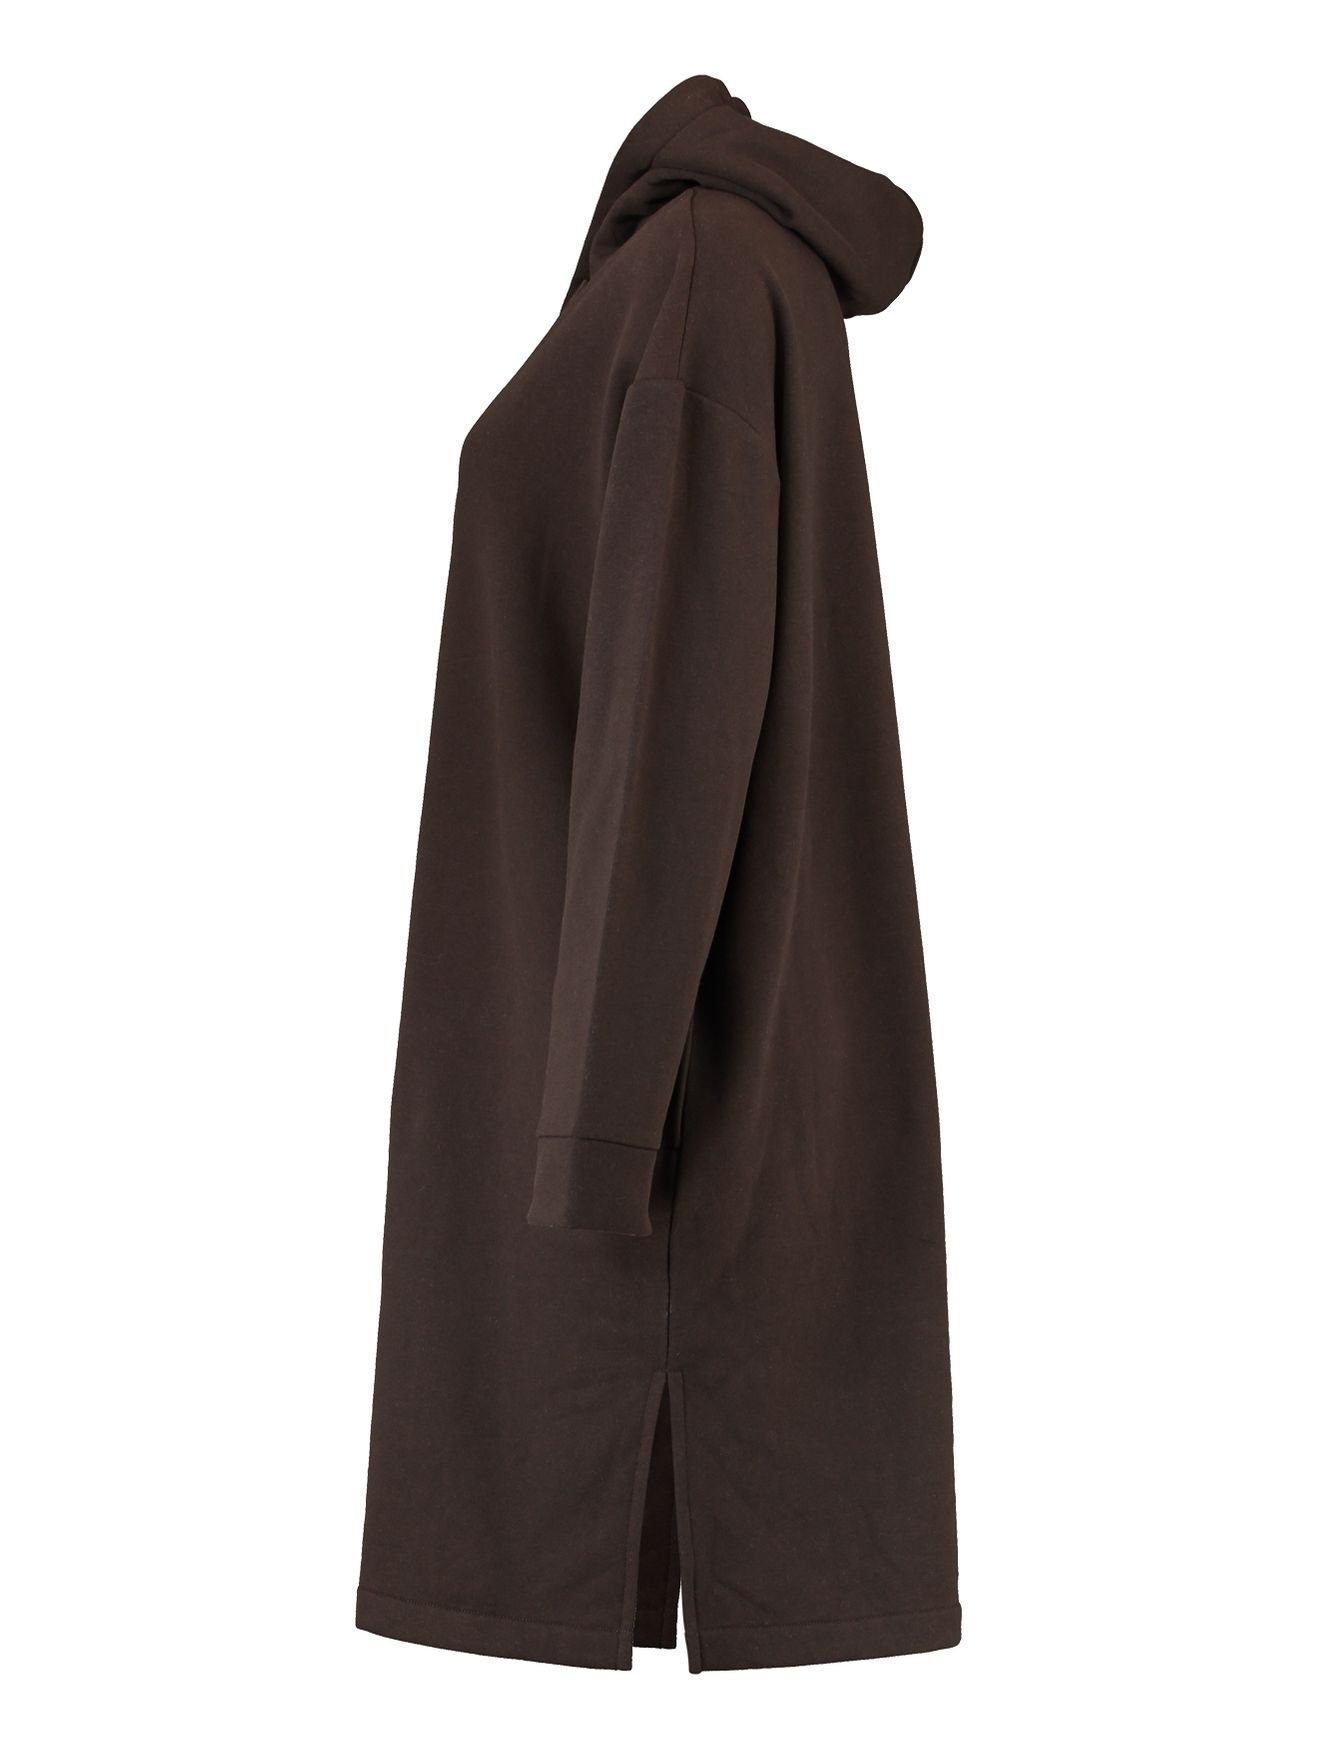 HaILY’S Shirtkleid Hoodie Kapuzen Mini Knielang (lang) in Kleid Braun-2 Sweat Dress 4705 Pullover SWERA